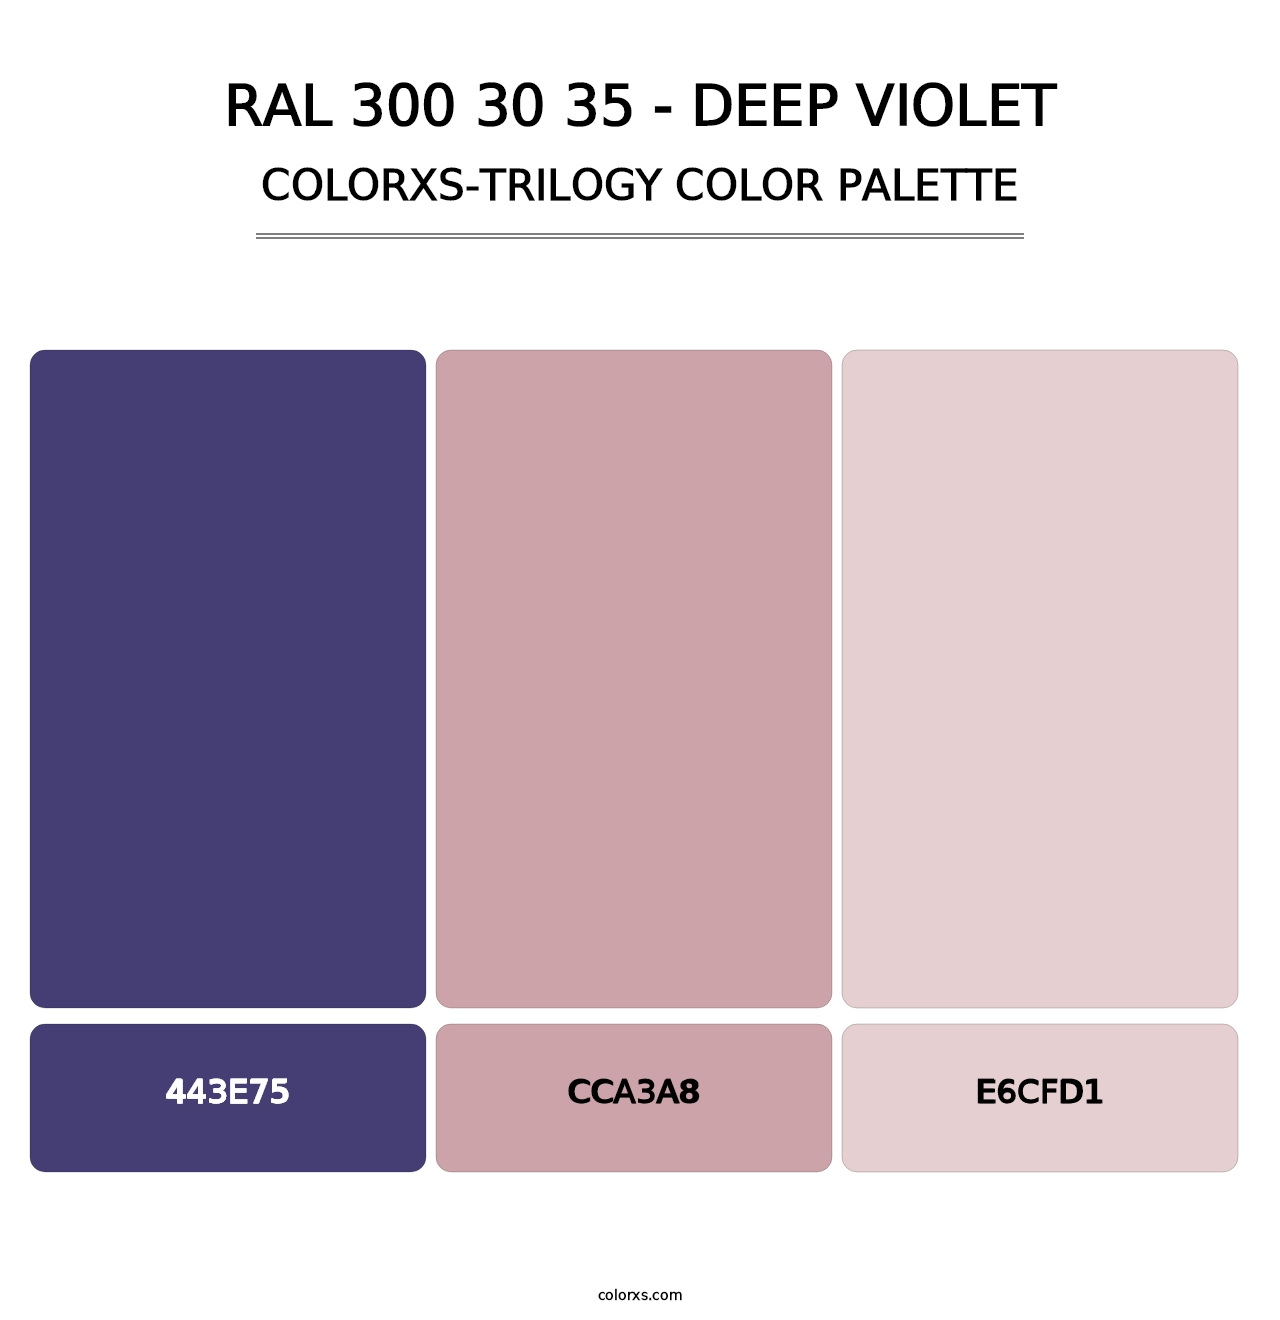 RAL 300 30 35 - Deep Violet - Colorxs Trilogy Palette